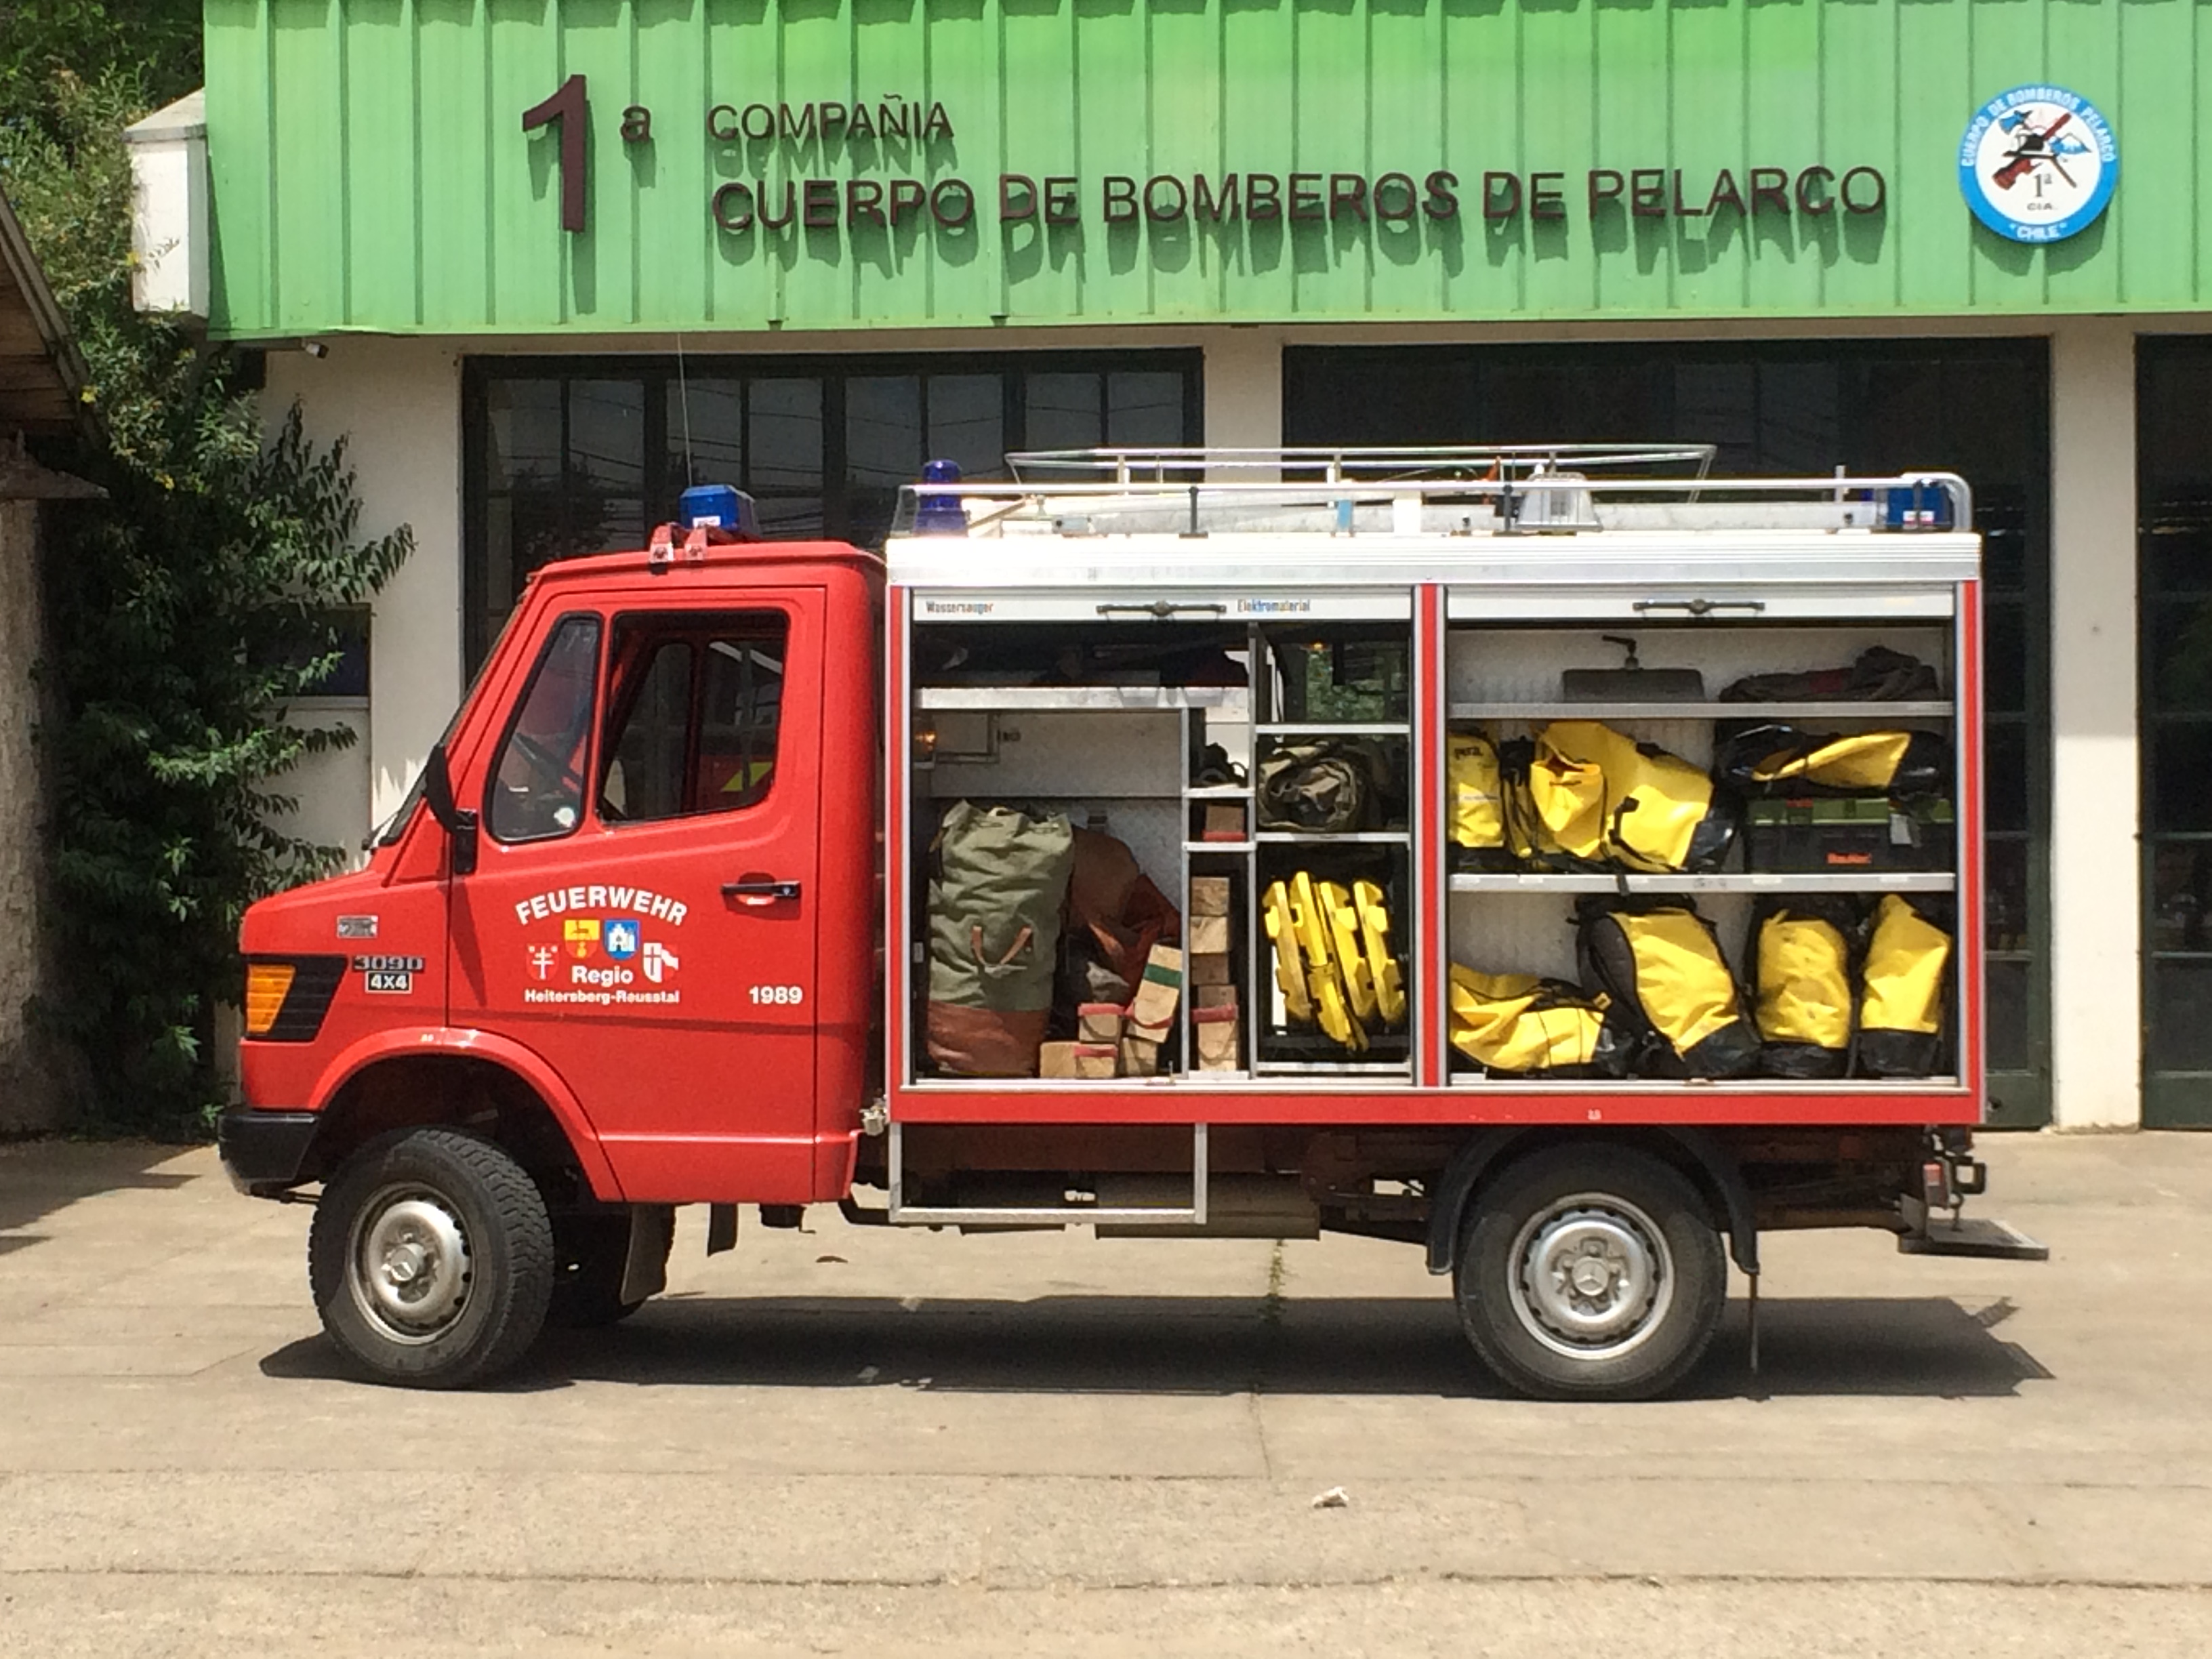 R1 Pelarco donado por bombero.ch suiza